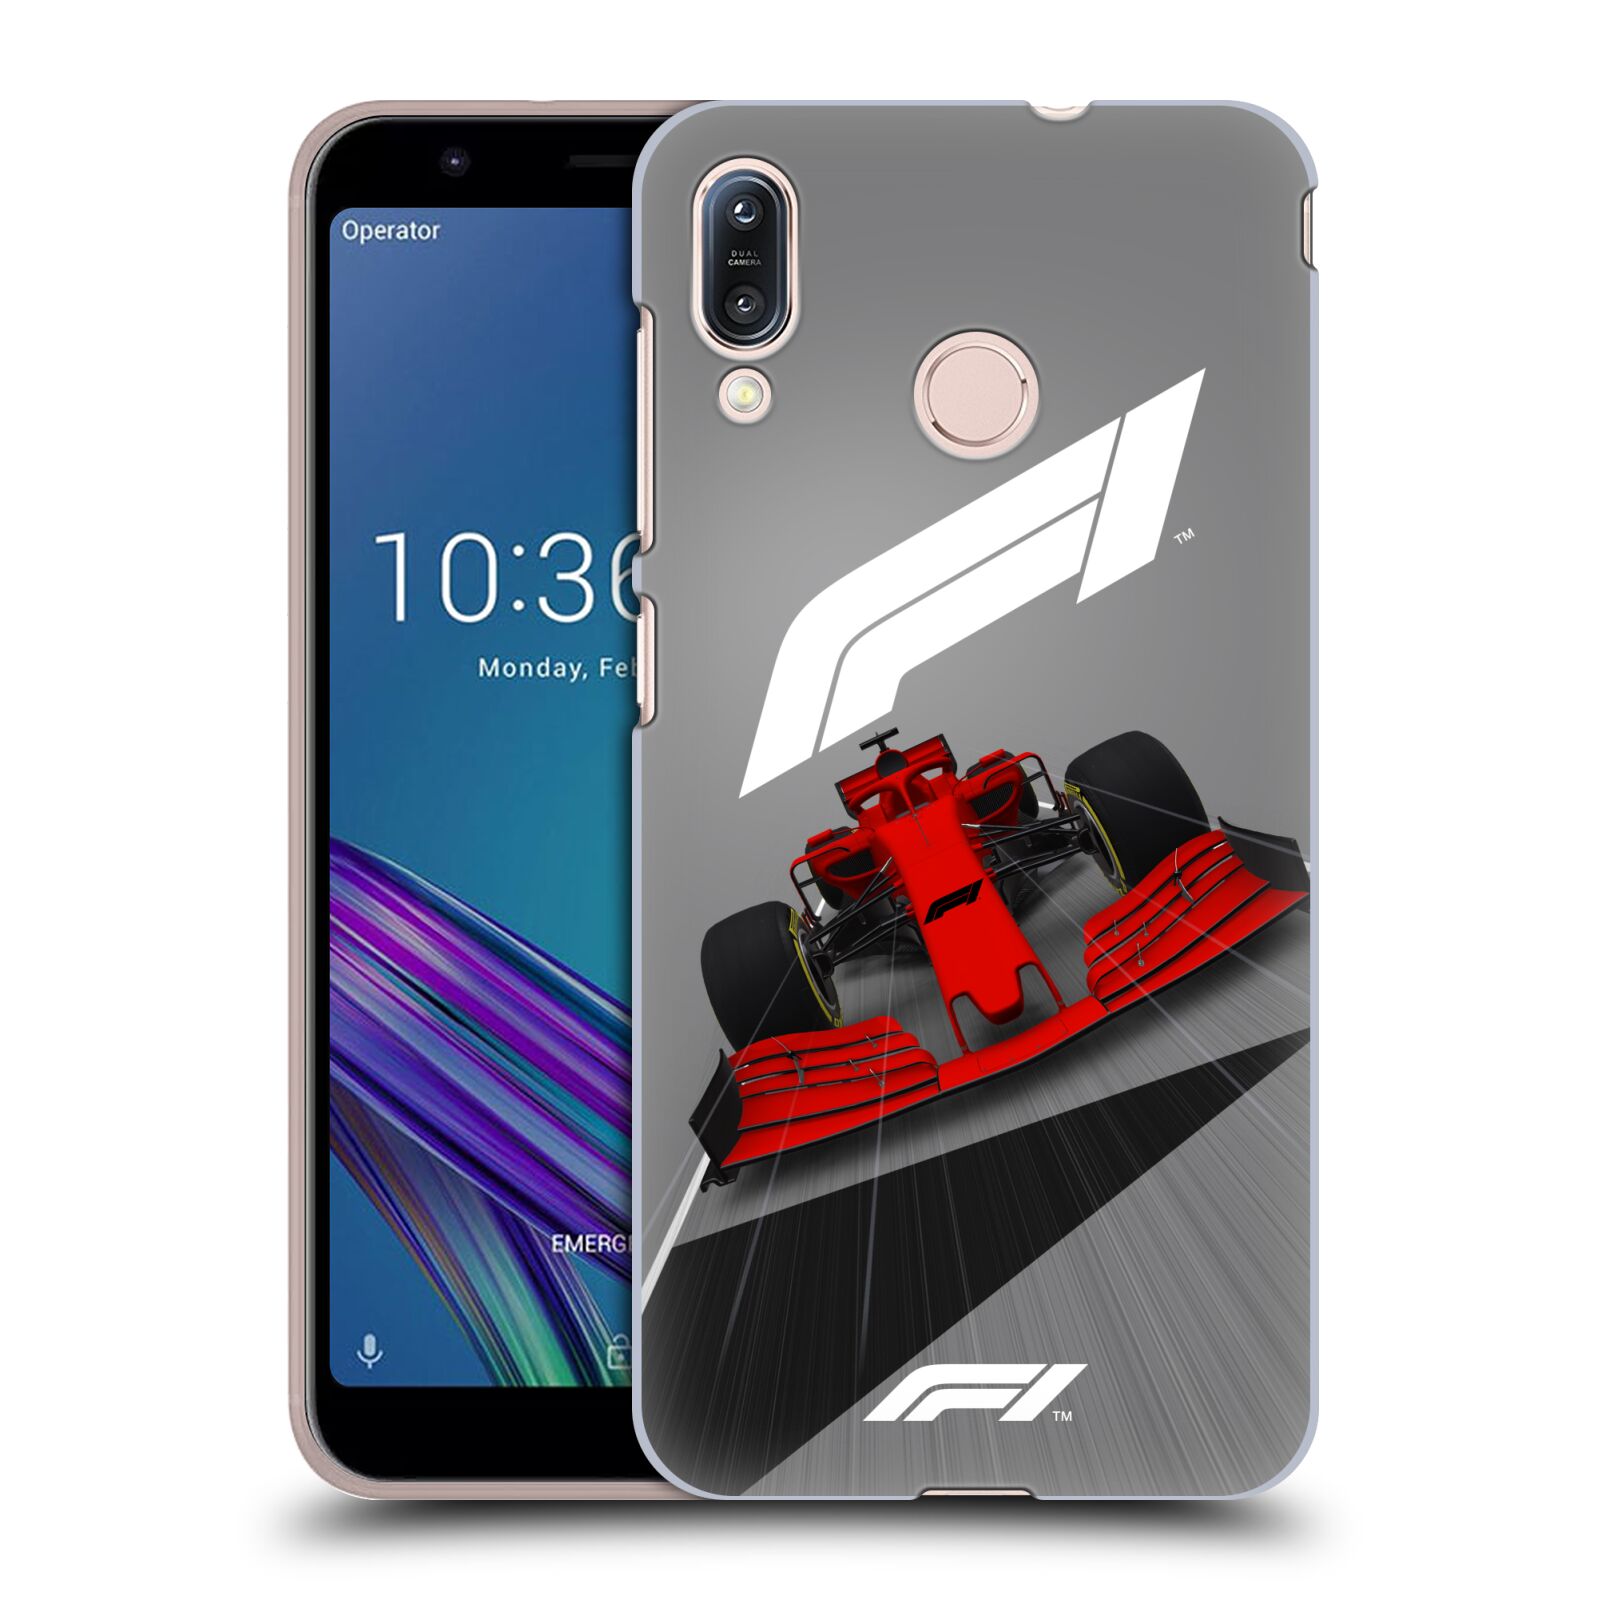 Zadní obal pro mobil Asus Zenfone Max (M1) ZB555KL - HEAD CASE - Formule 1 - Červená